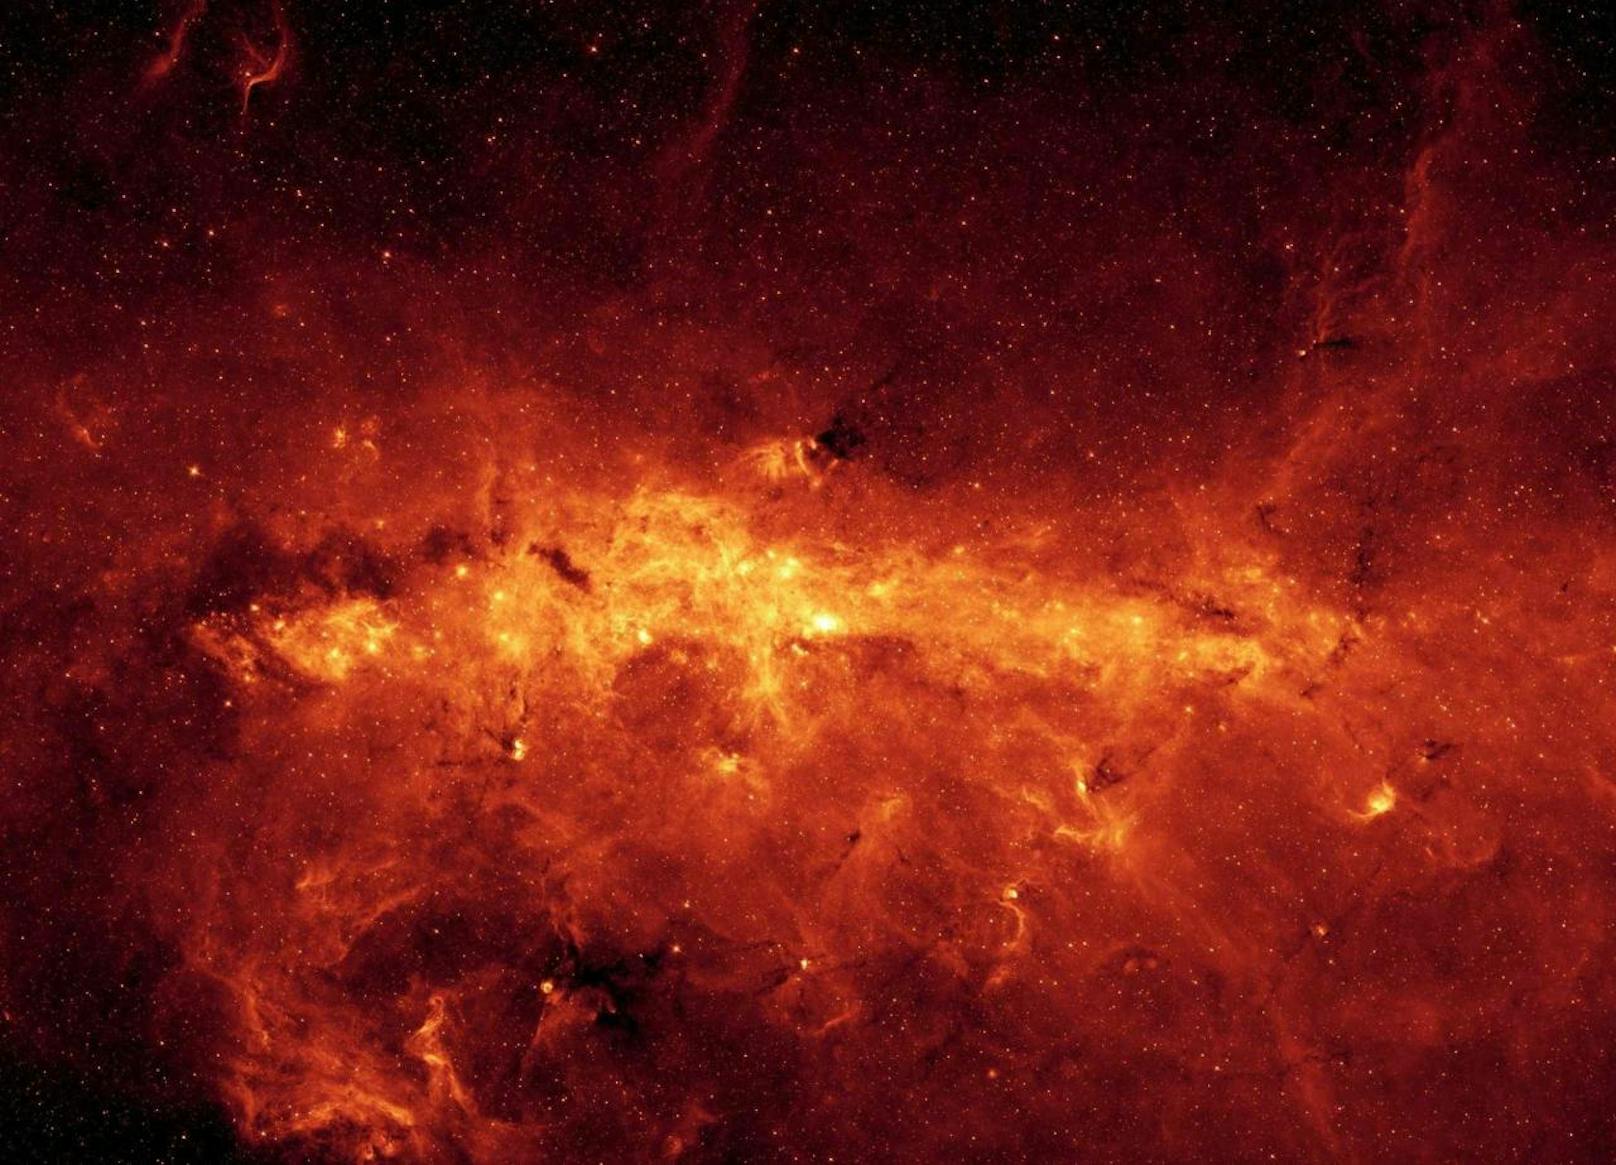 Straub im Zentrum der Milchstraße
NASA/JPL-Caltech/S. Stolvoy